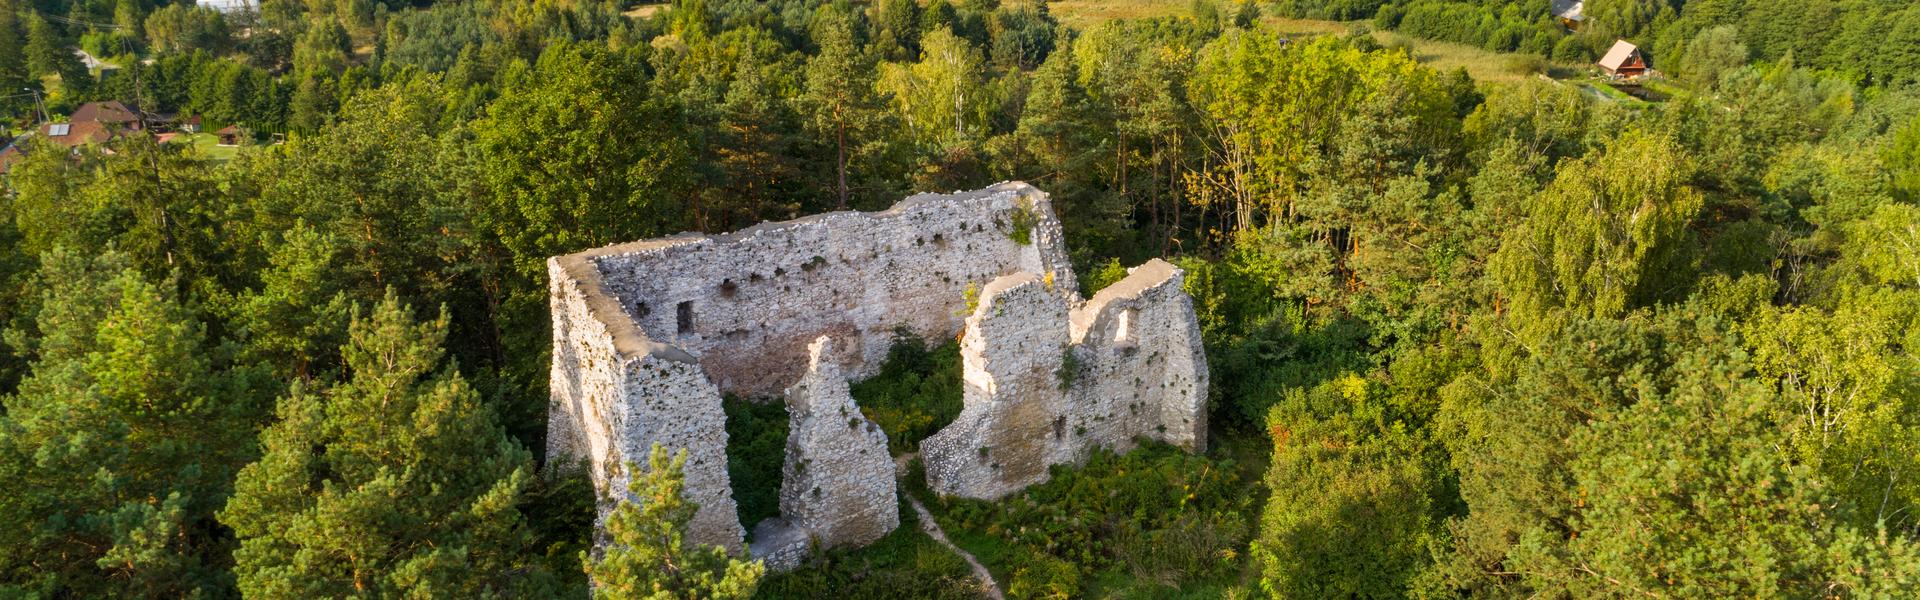 Ruiny średniowiecznego zamku wśród zieleni